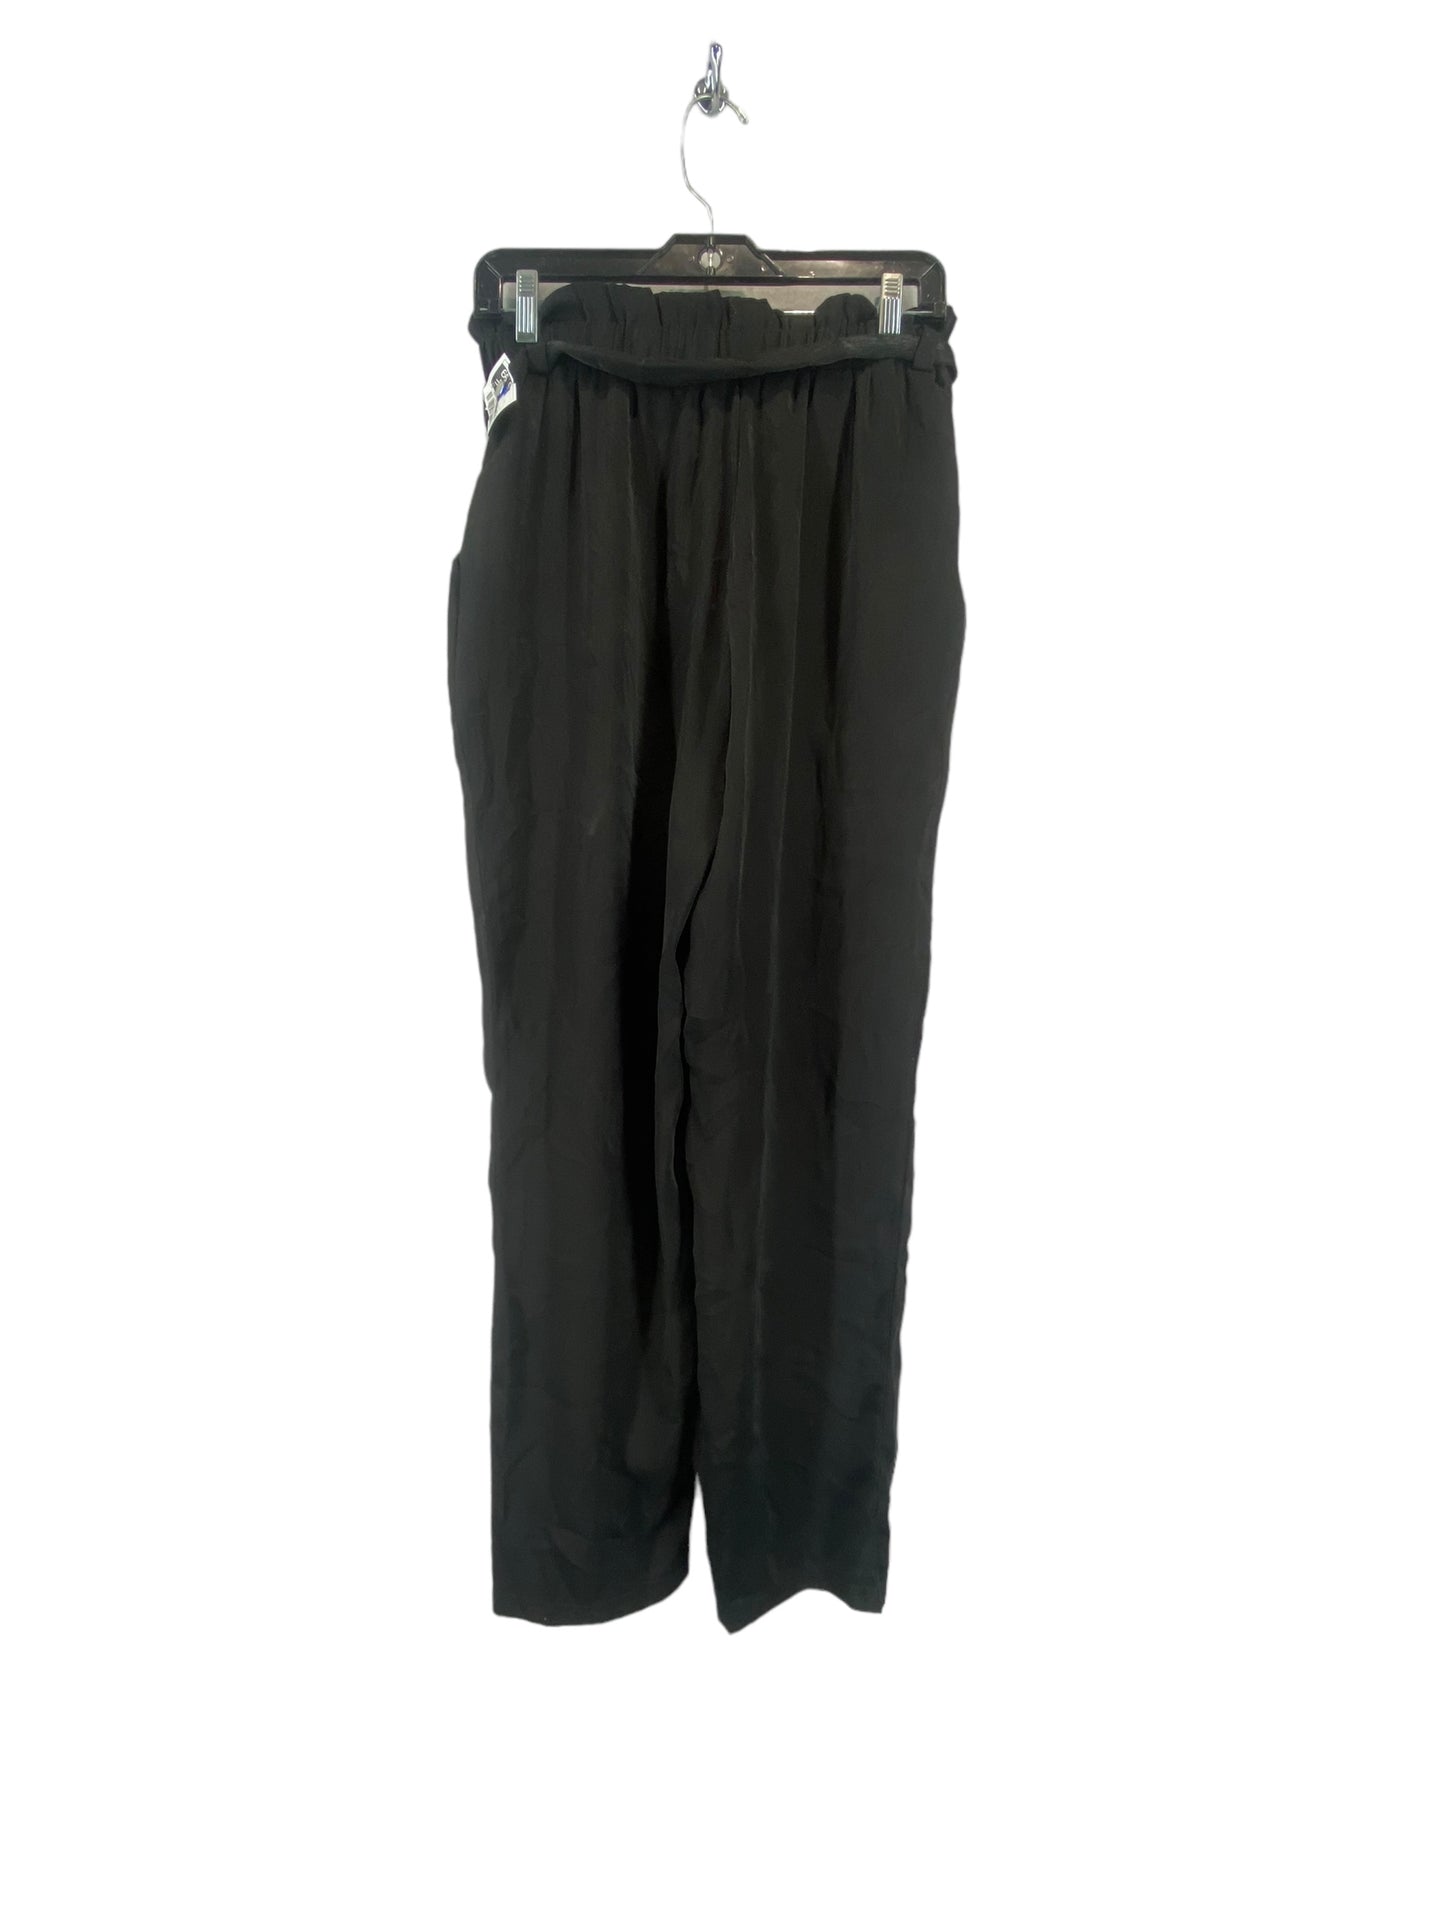 Black Pants Dress Sage, Size M